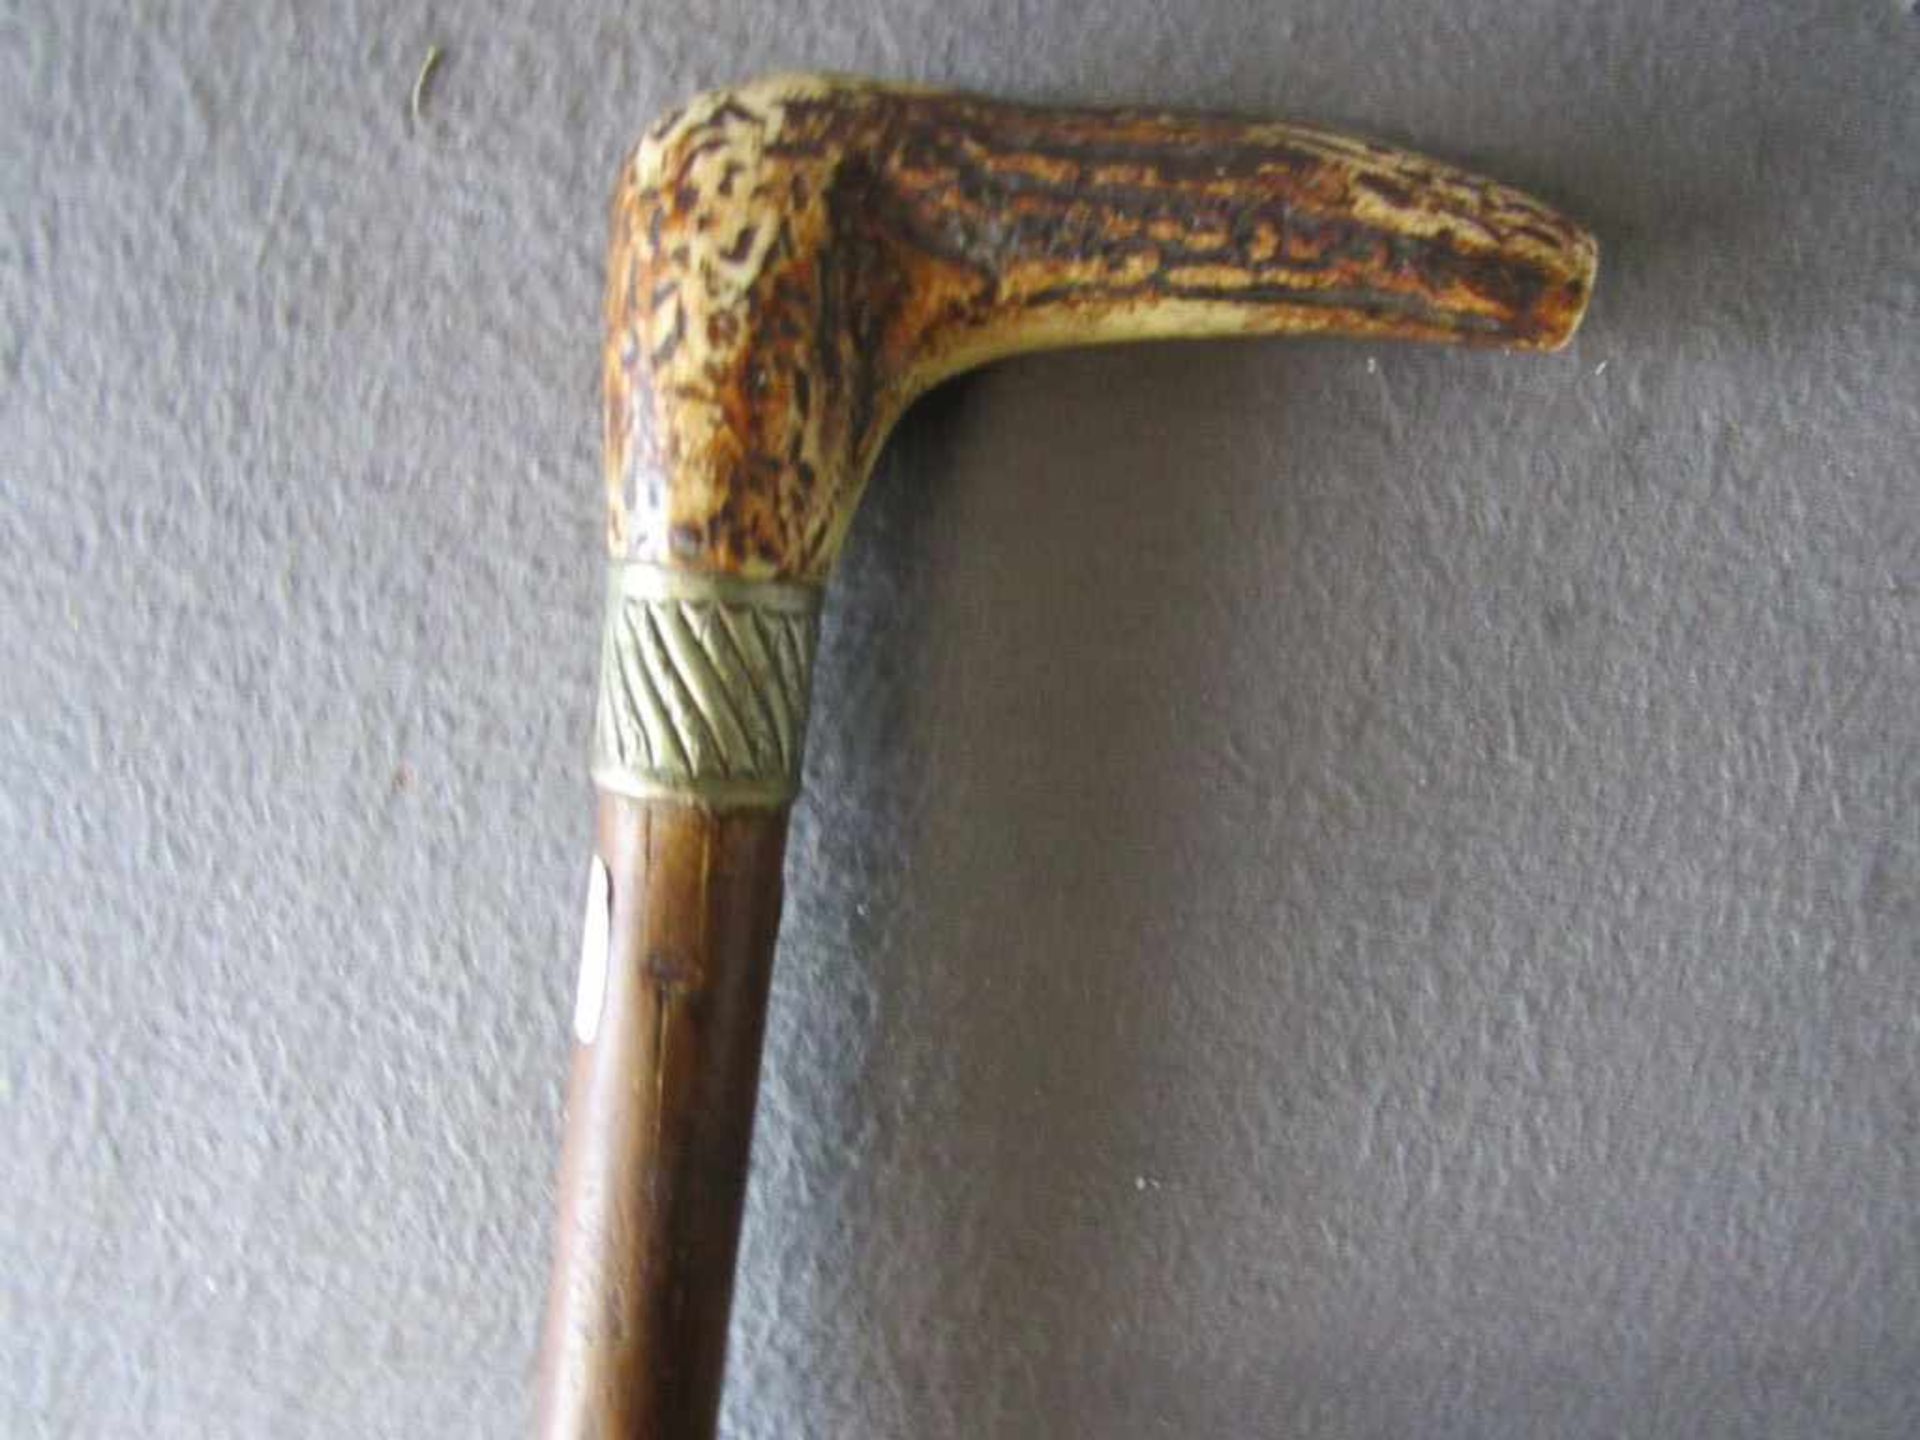 Gehstock Horngriff um 1900 Länge:82cm- - -20.00 % buyer's premium on the hammer price19.00 % VAT - Bild 2 aus 2